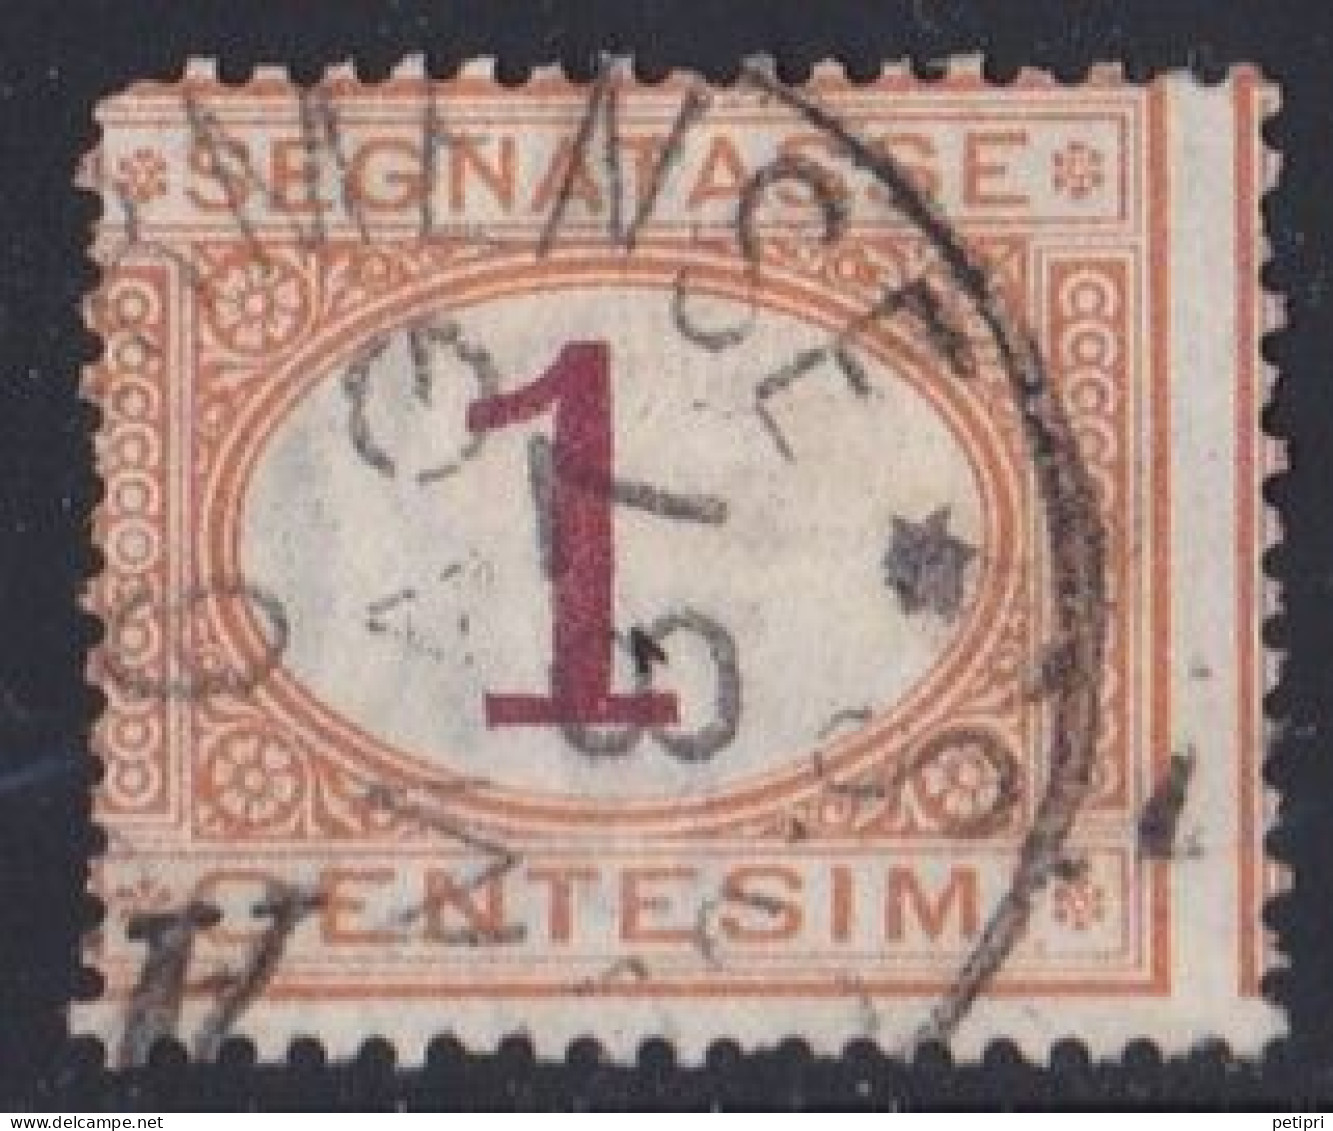 Italie - 1861 - 1878  Victor Emmanuel II  -  Segnatasse  1  Centesimi  Oblitéré - Segnatasse